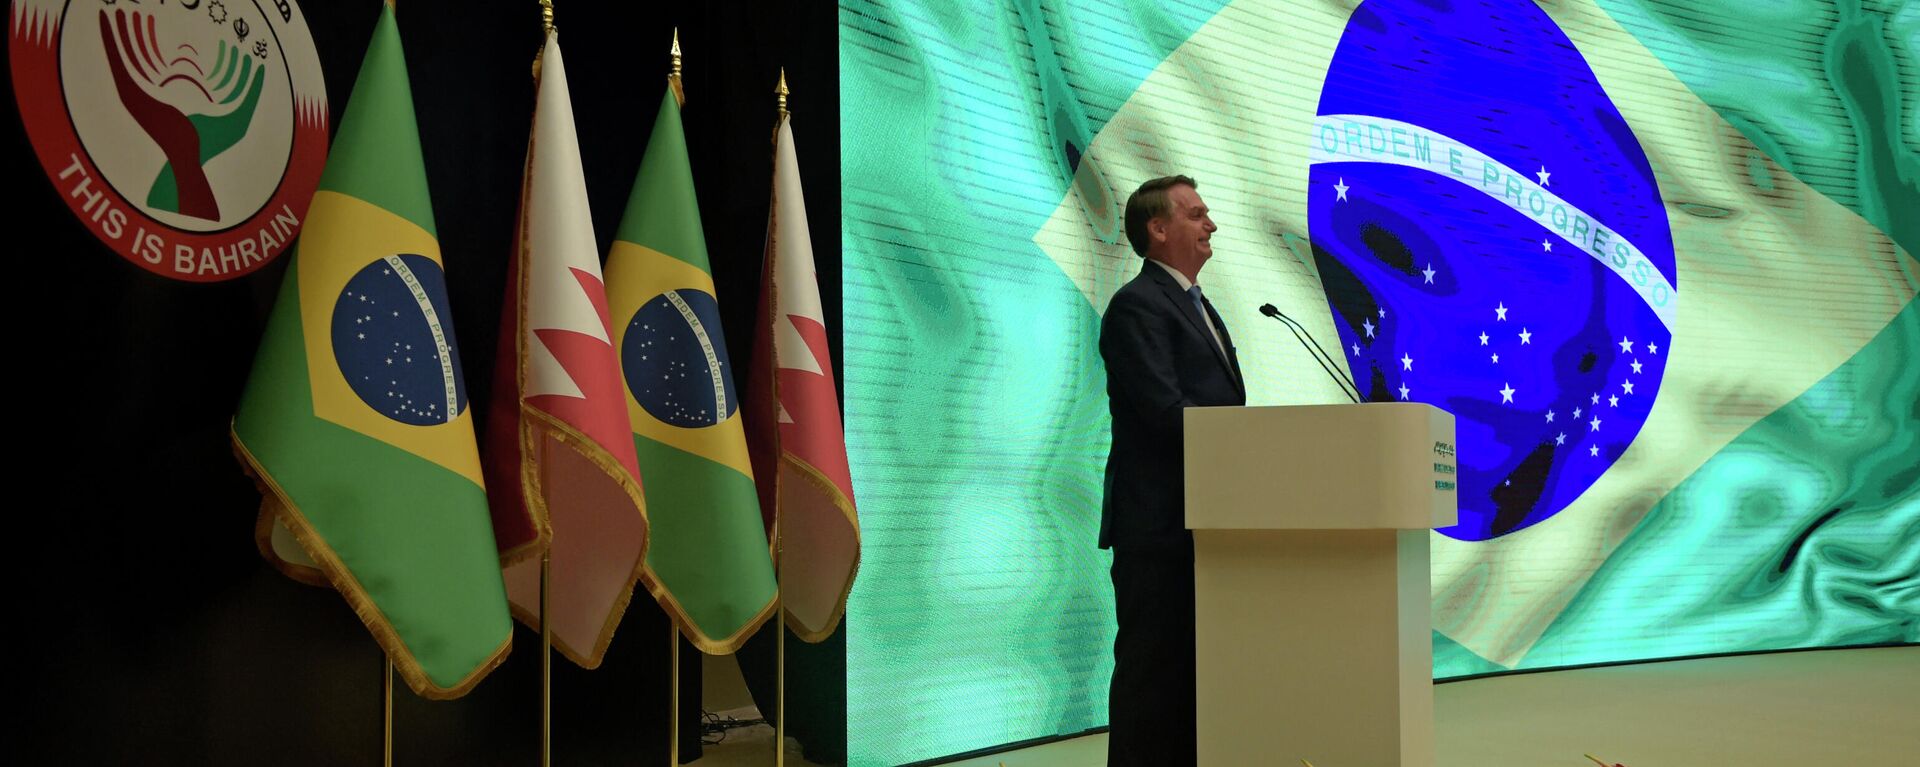 Presidente Jair Bolsonaro discursa em Bahrein, 16 de novembro de 2021 - Sputnik Brasil, 1920, 18.11.2021